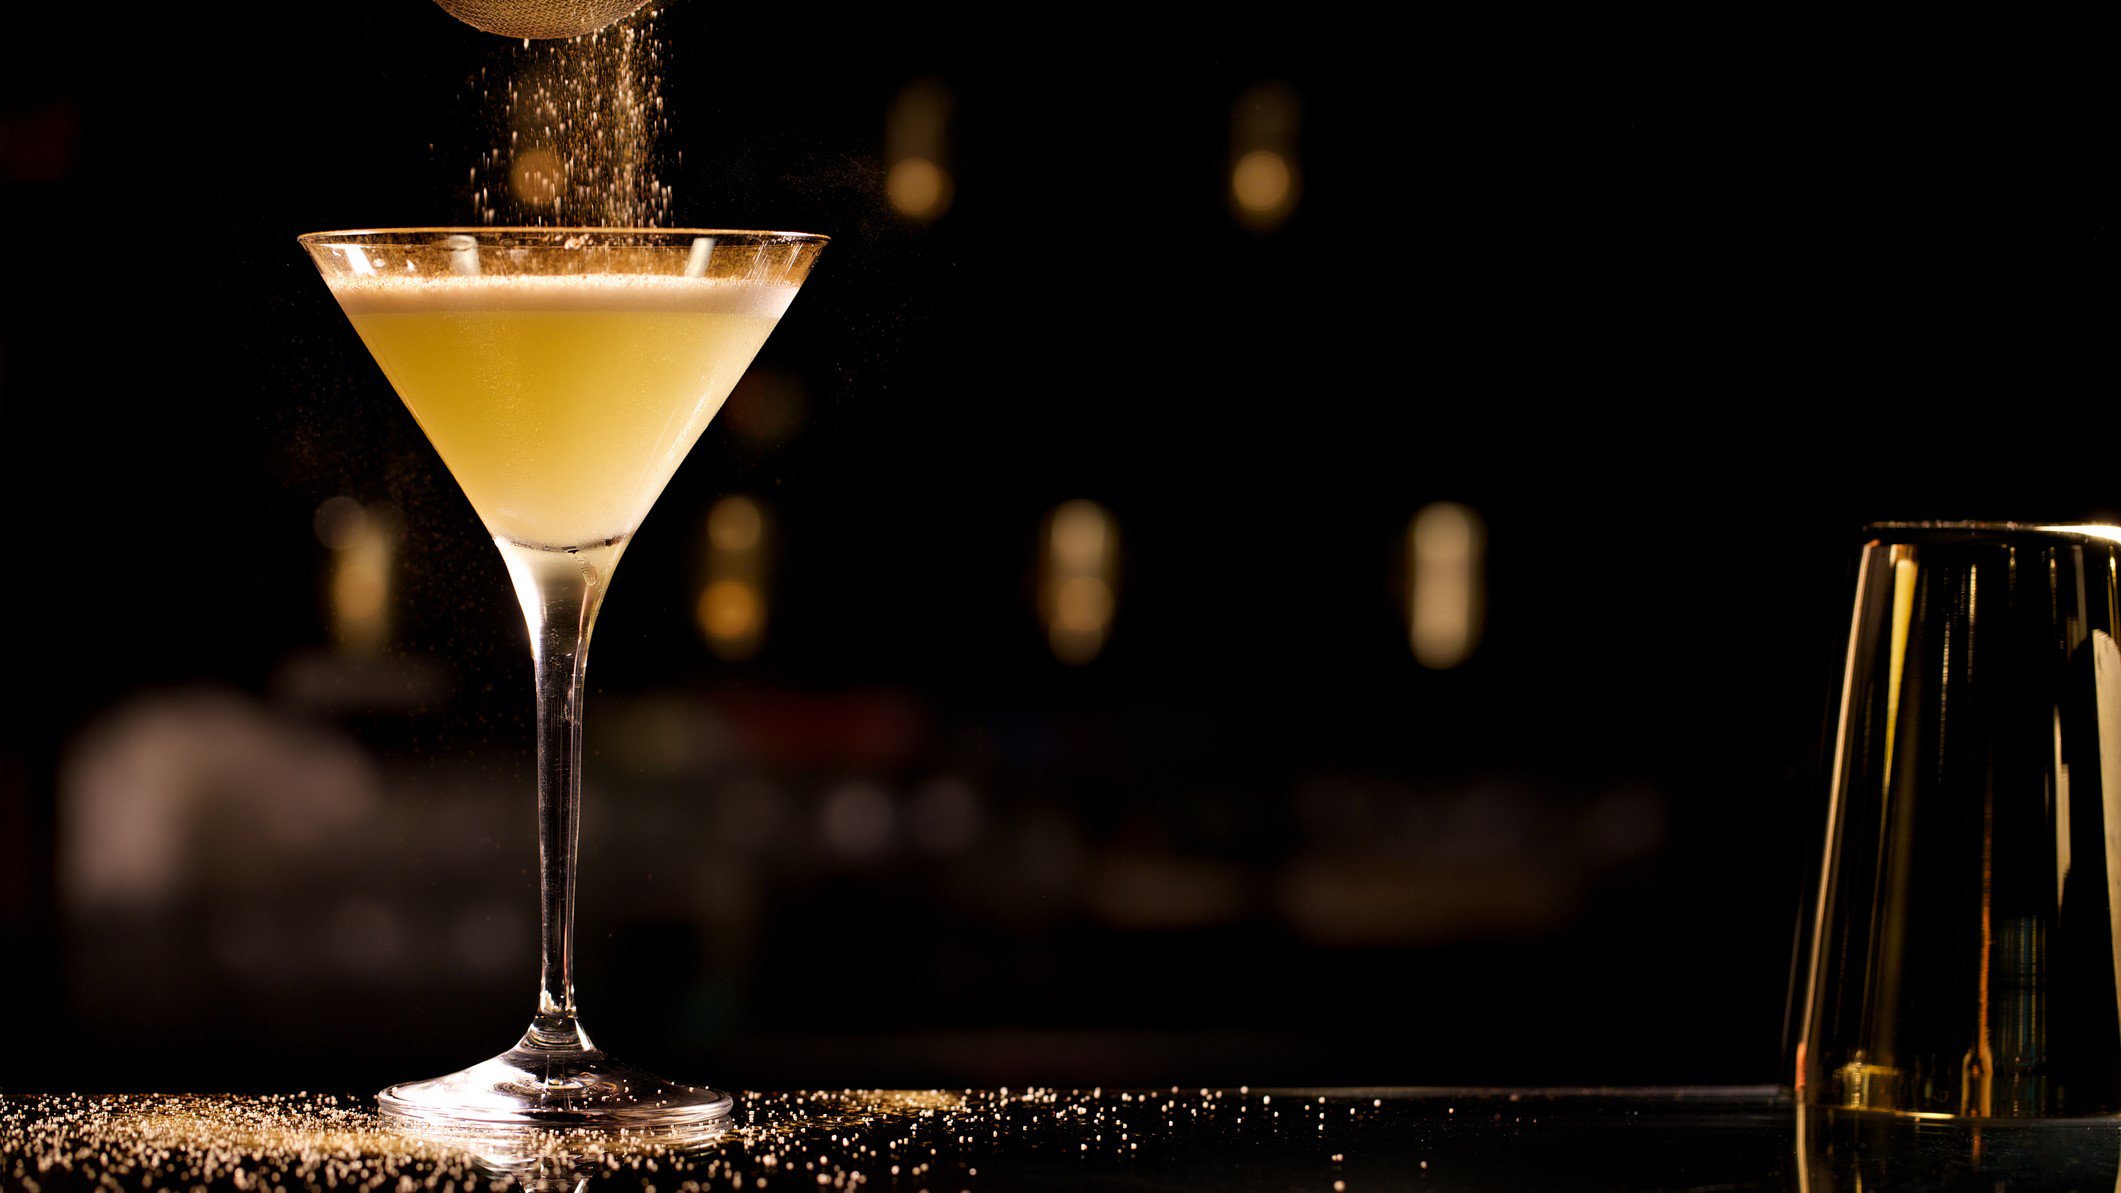 French 75 aus "Casablanca" Champagner-Cocktail in Champagnerglas auf dunklem Tisch vor dunklem Hintergrund. Zucker rieselt von oben in das Glas. Ein weiteres Glas im Vordergrund angedeutet. Frontalaufnahme.